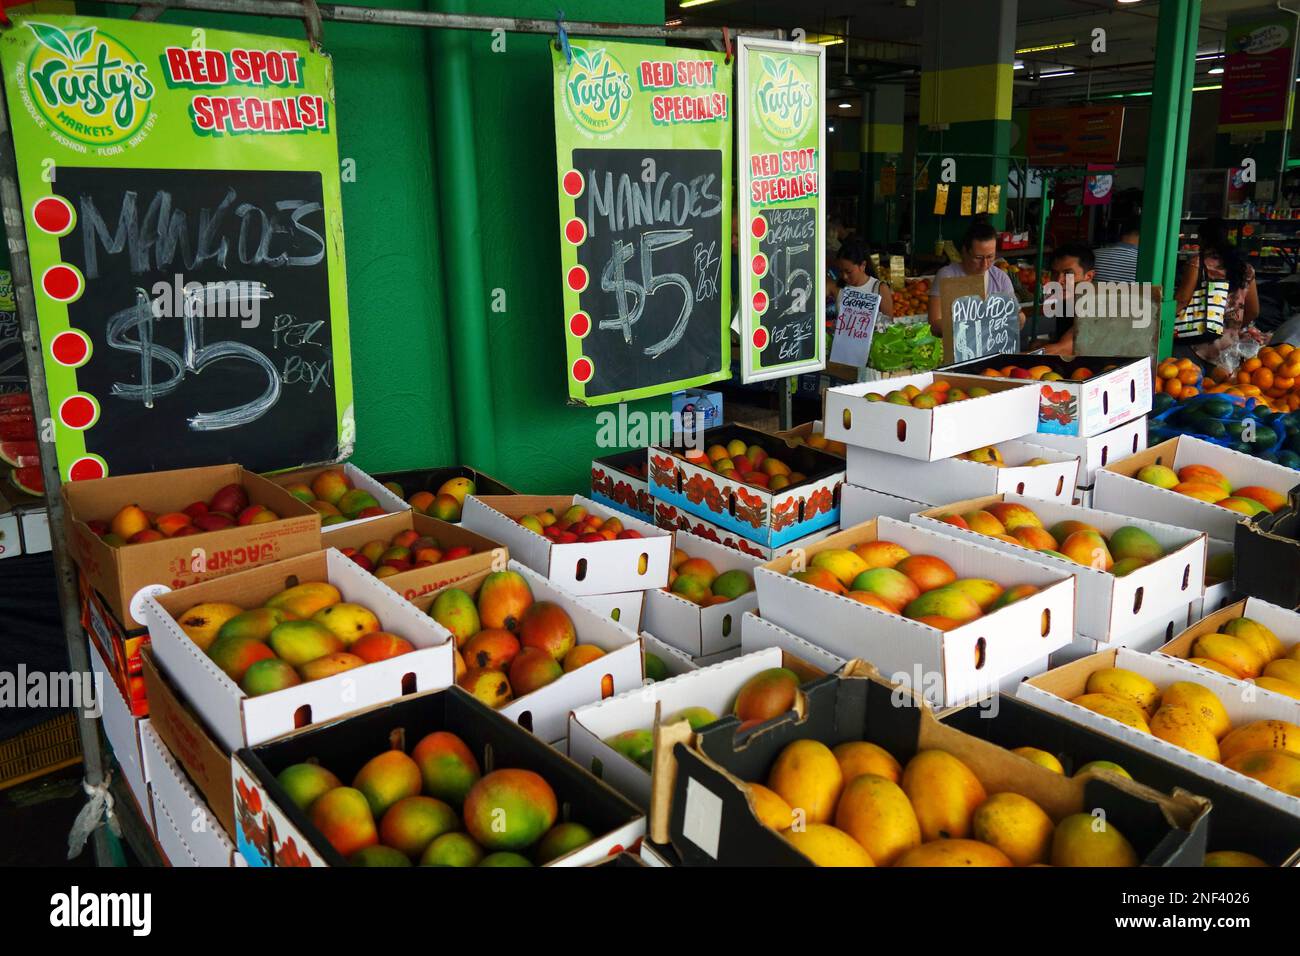 Billige Mangos zur Hauptsaison der Mango, Rusty's Markets, Cairns, Queensland, Australien. Kein MR oder PR Stockfoto